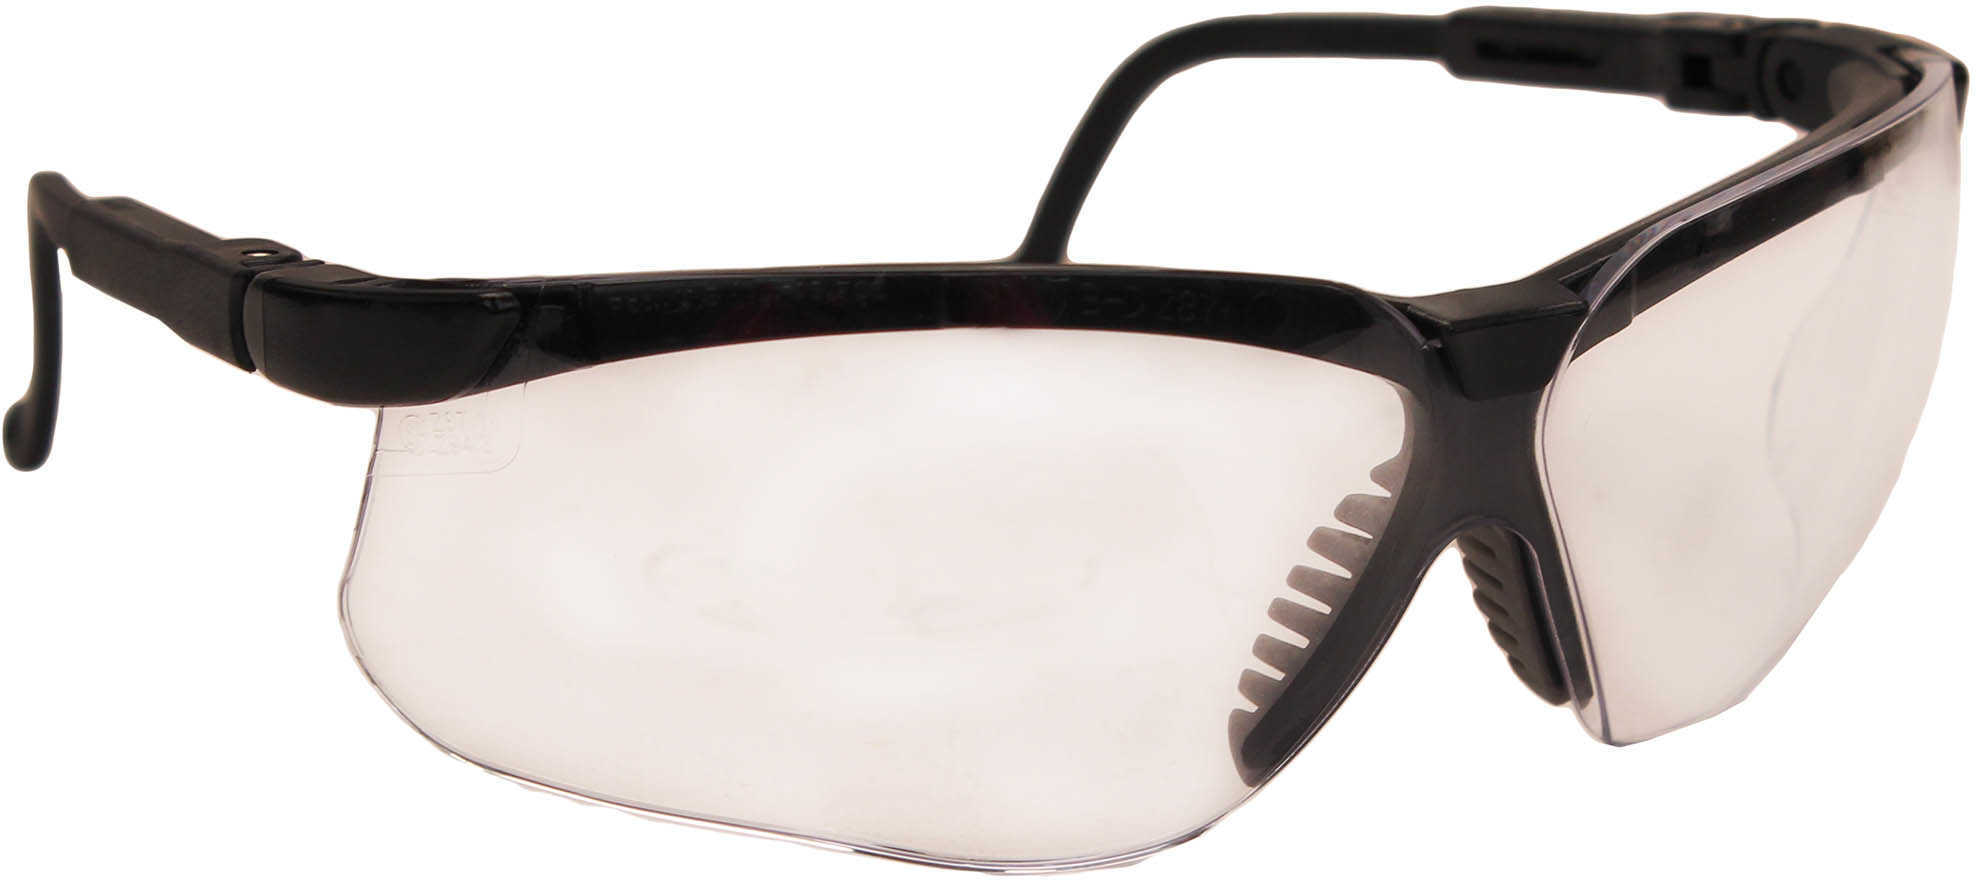 Howard Leight Genesis Glasses Black Frame Clear Lens R-03570